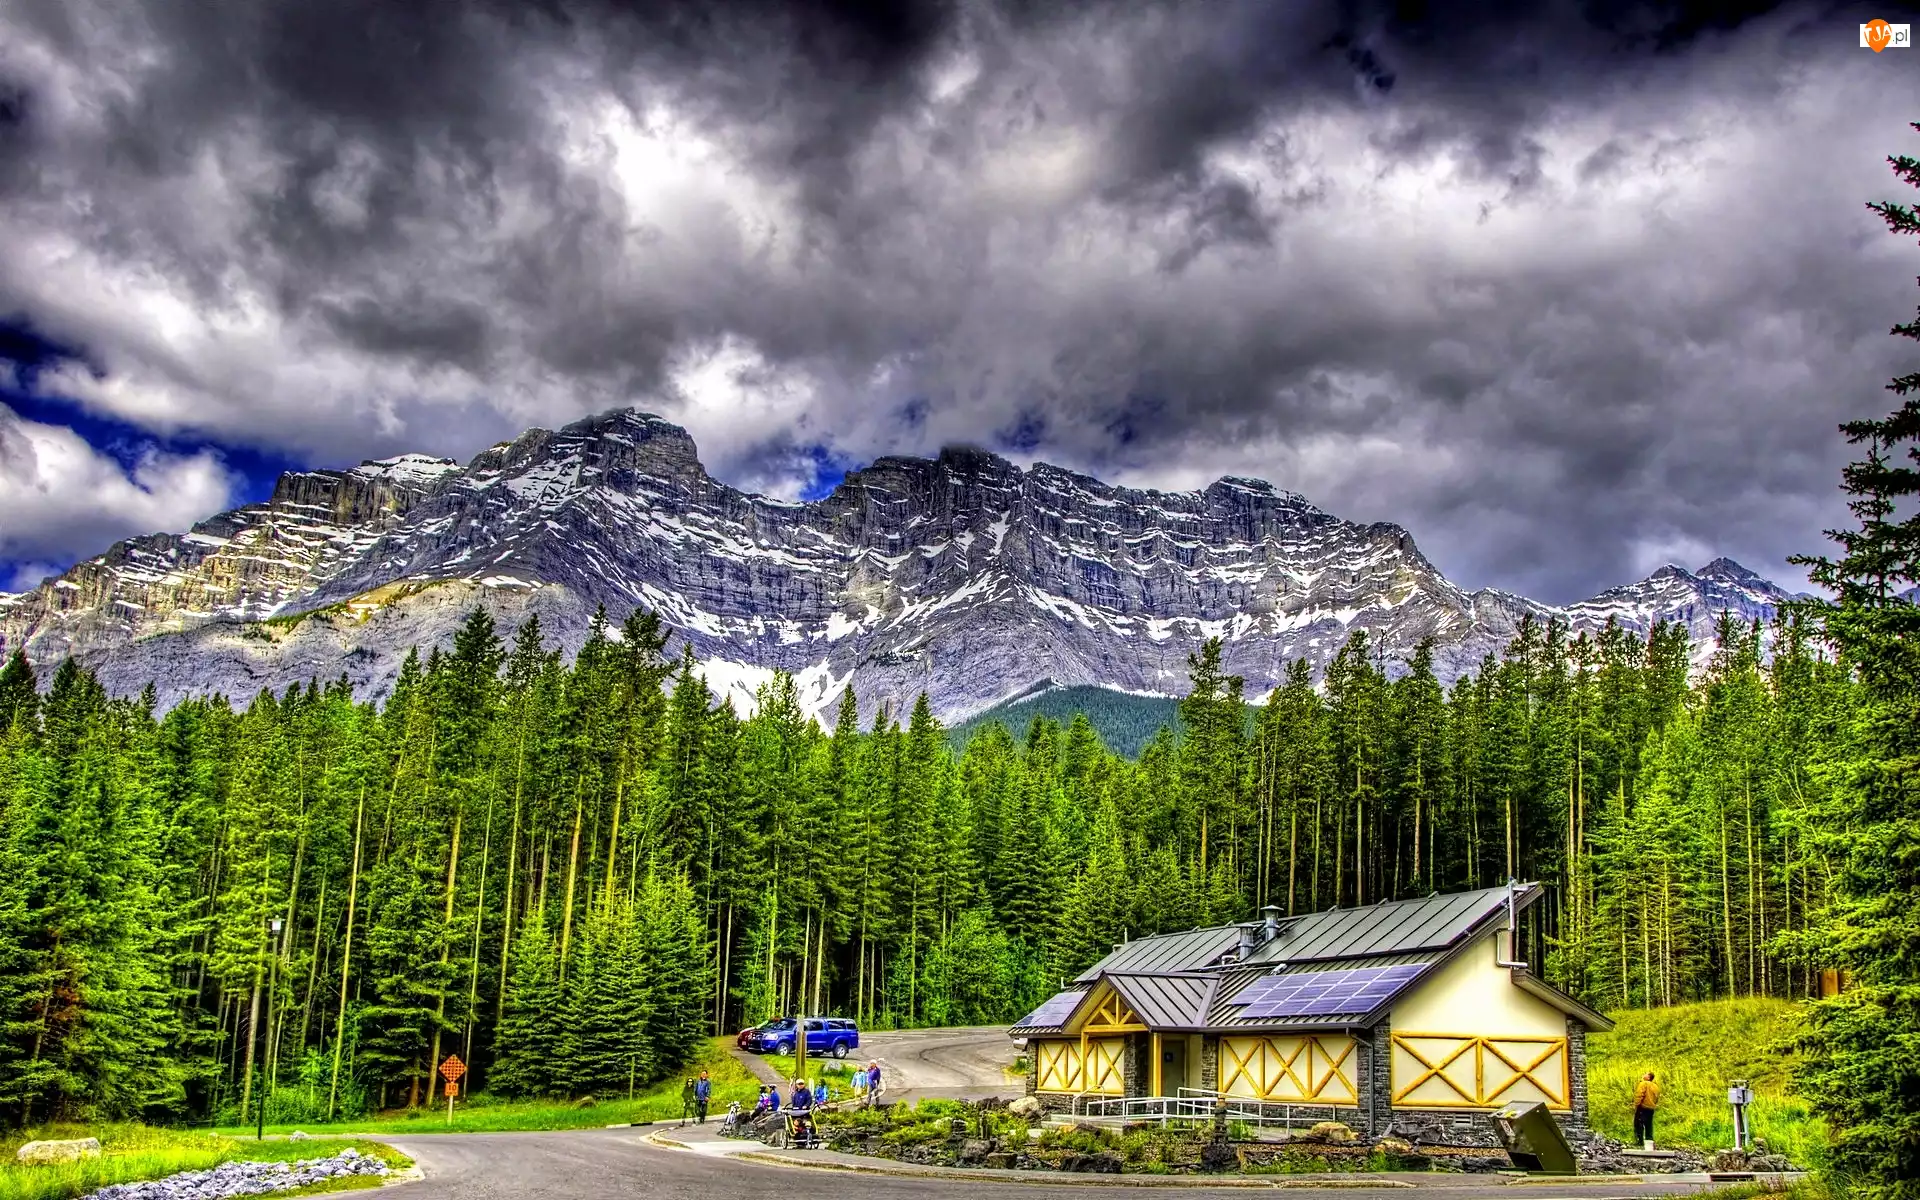 Dom, Chmury, Las, Narodowy, Góry, Banff, Droga, Park